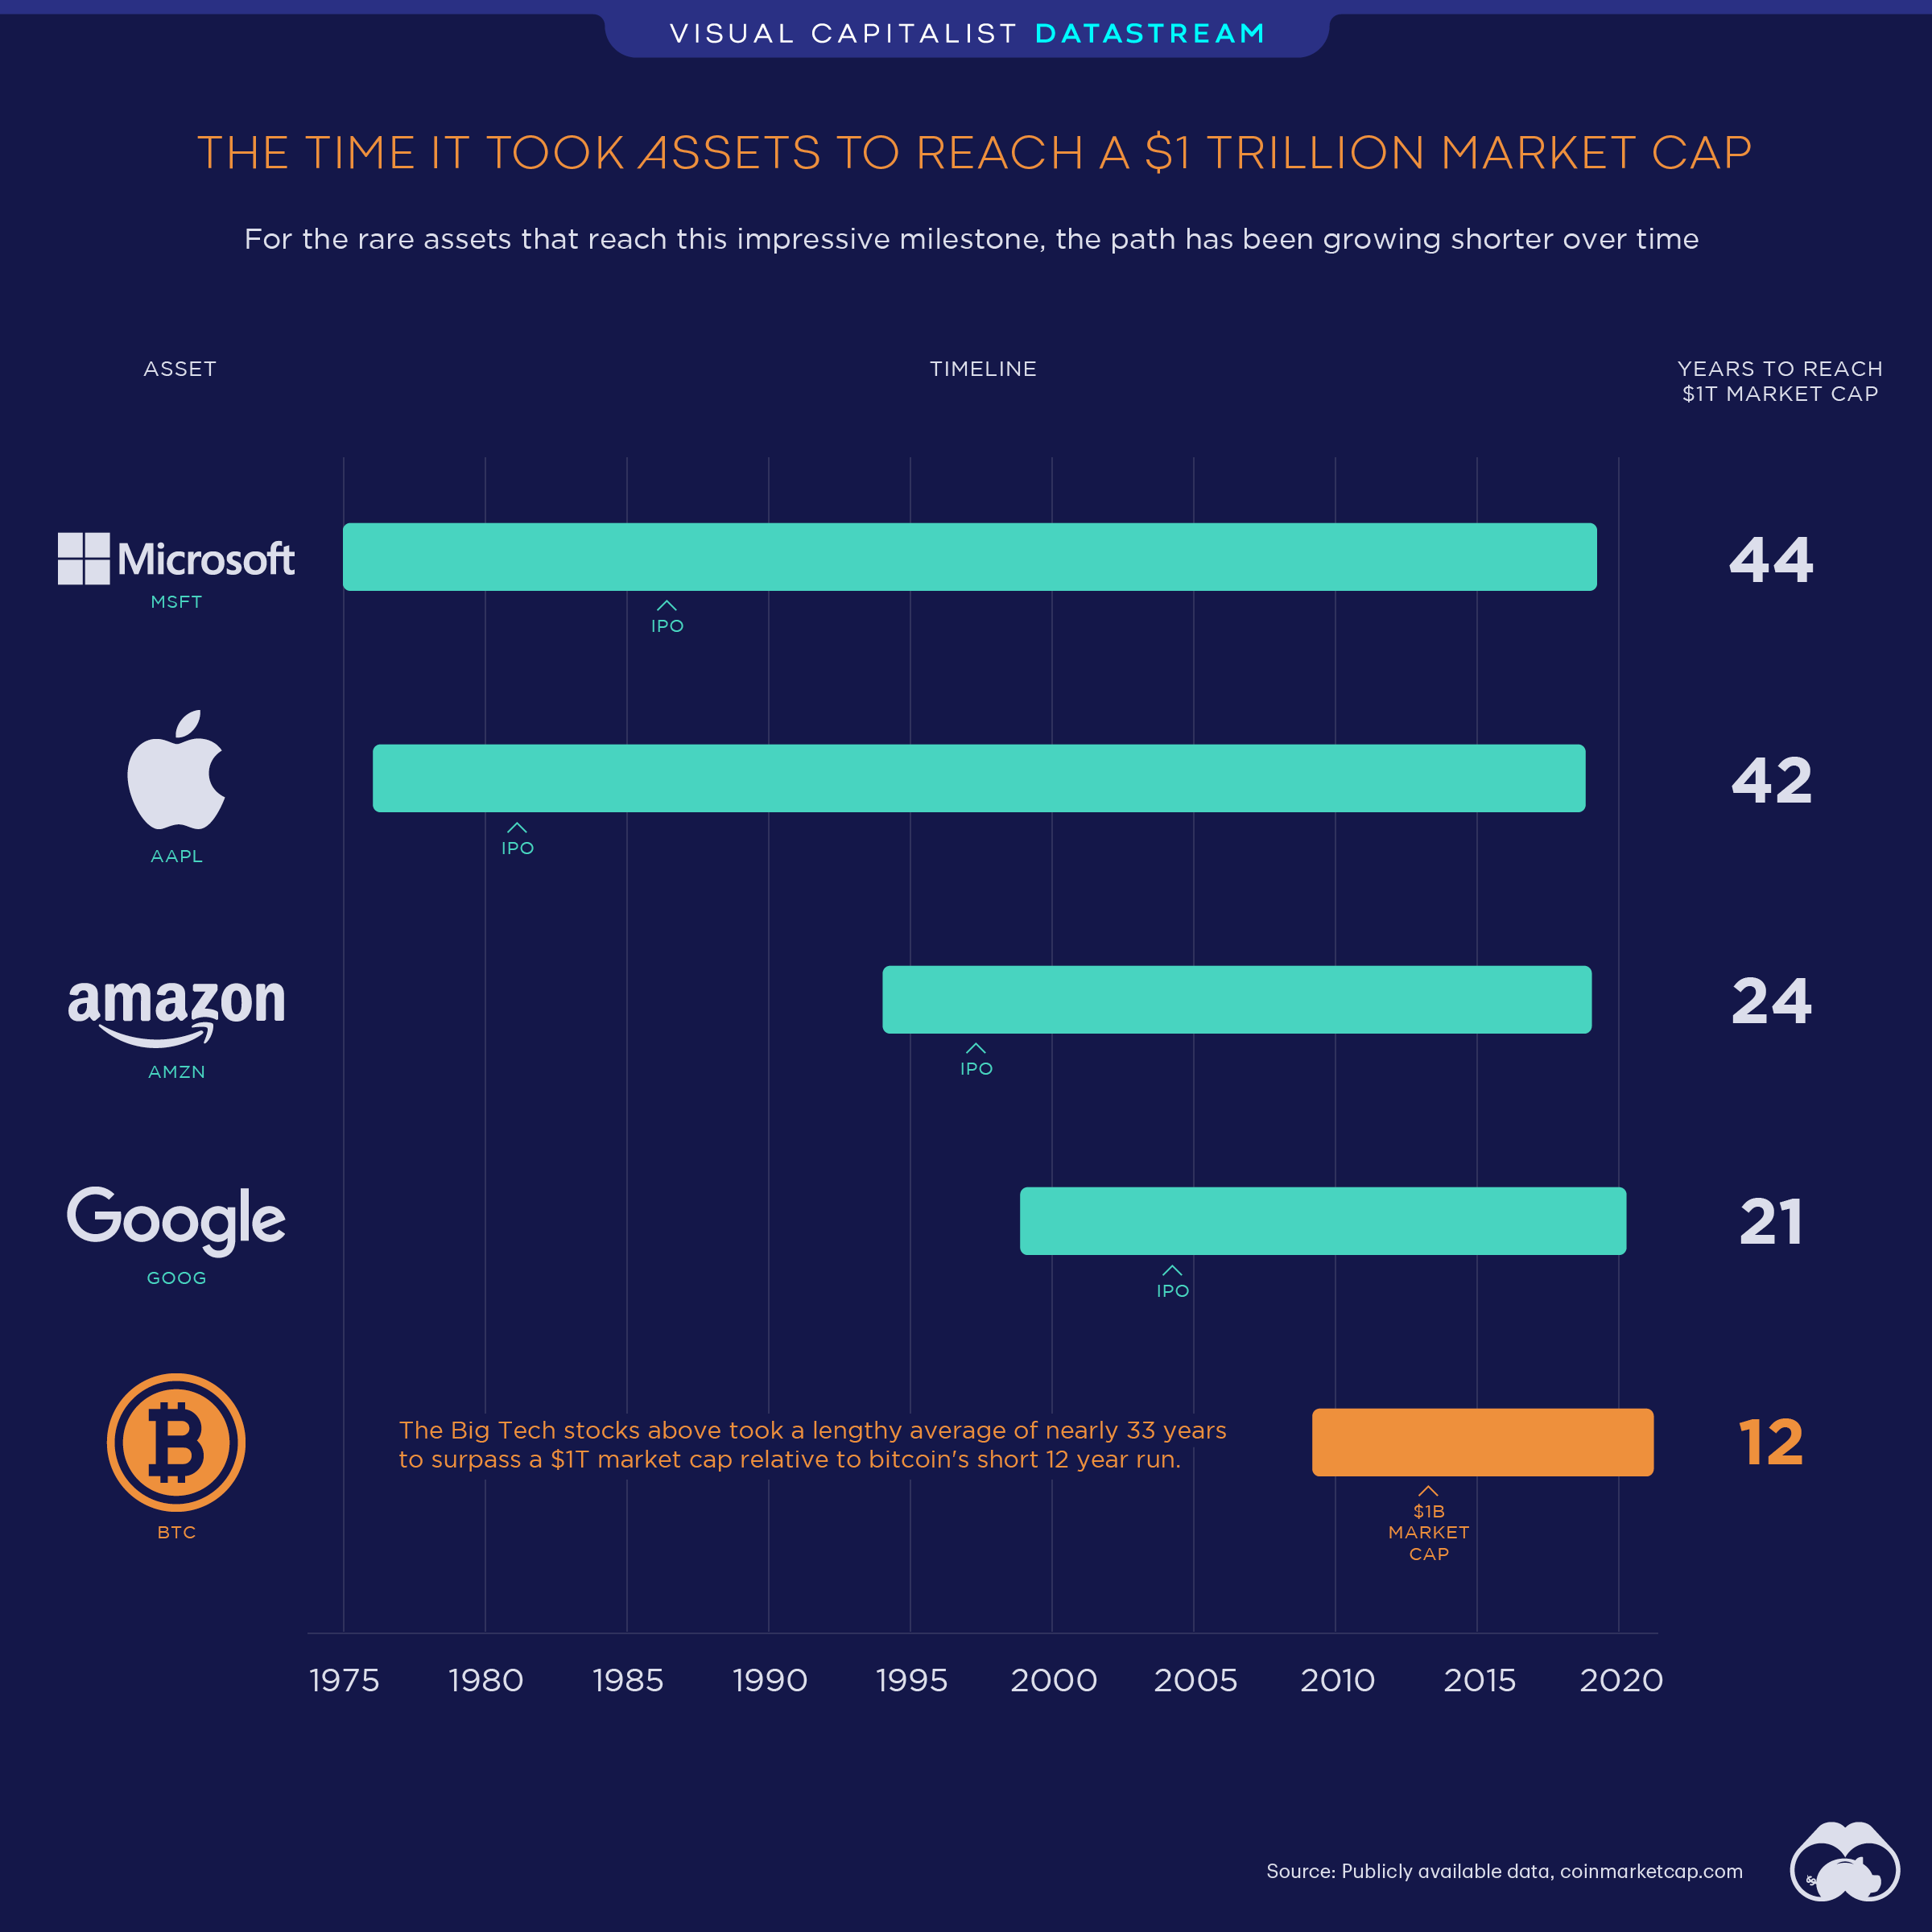 Top Cryptocurrencies by Market Cap | ADVFN